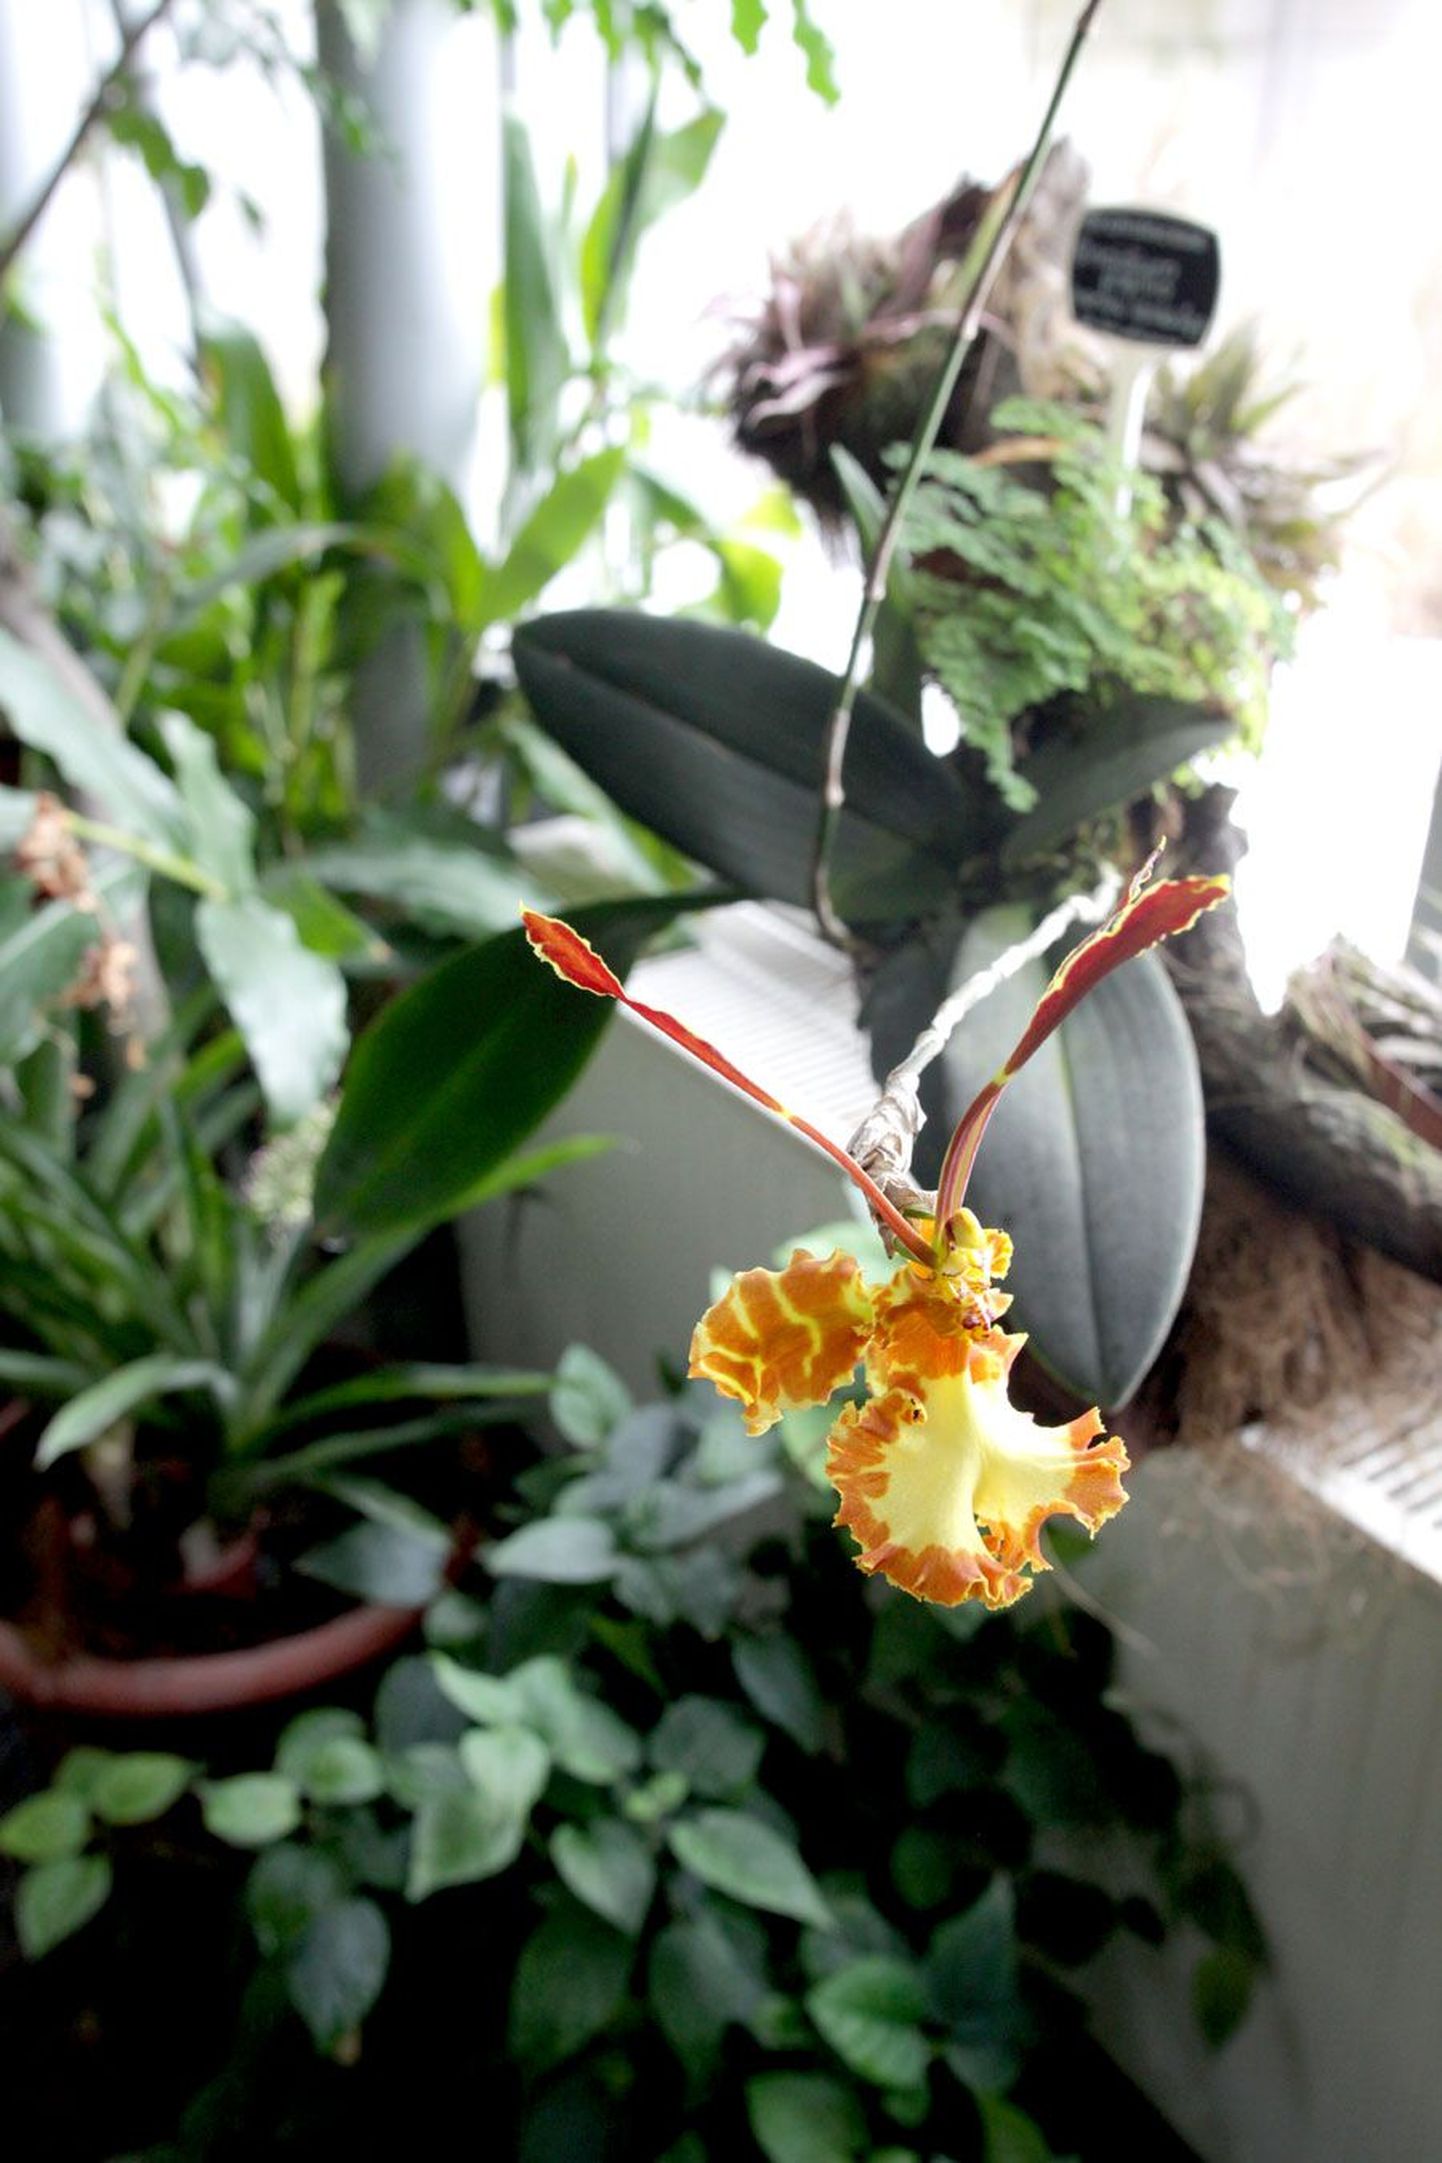 Botaanikaaias õitseb pidevalt ja toredalt liblikkäpp. Ka kodudes silma rõõmustavad orhideed võib viia kaunite käpaliste võistlusele.